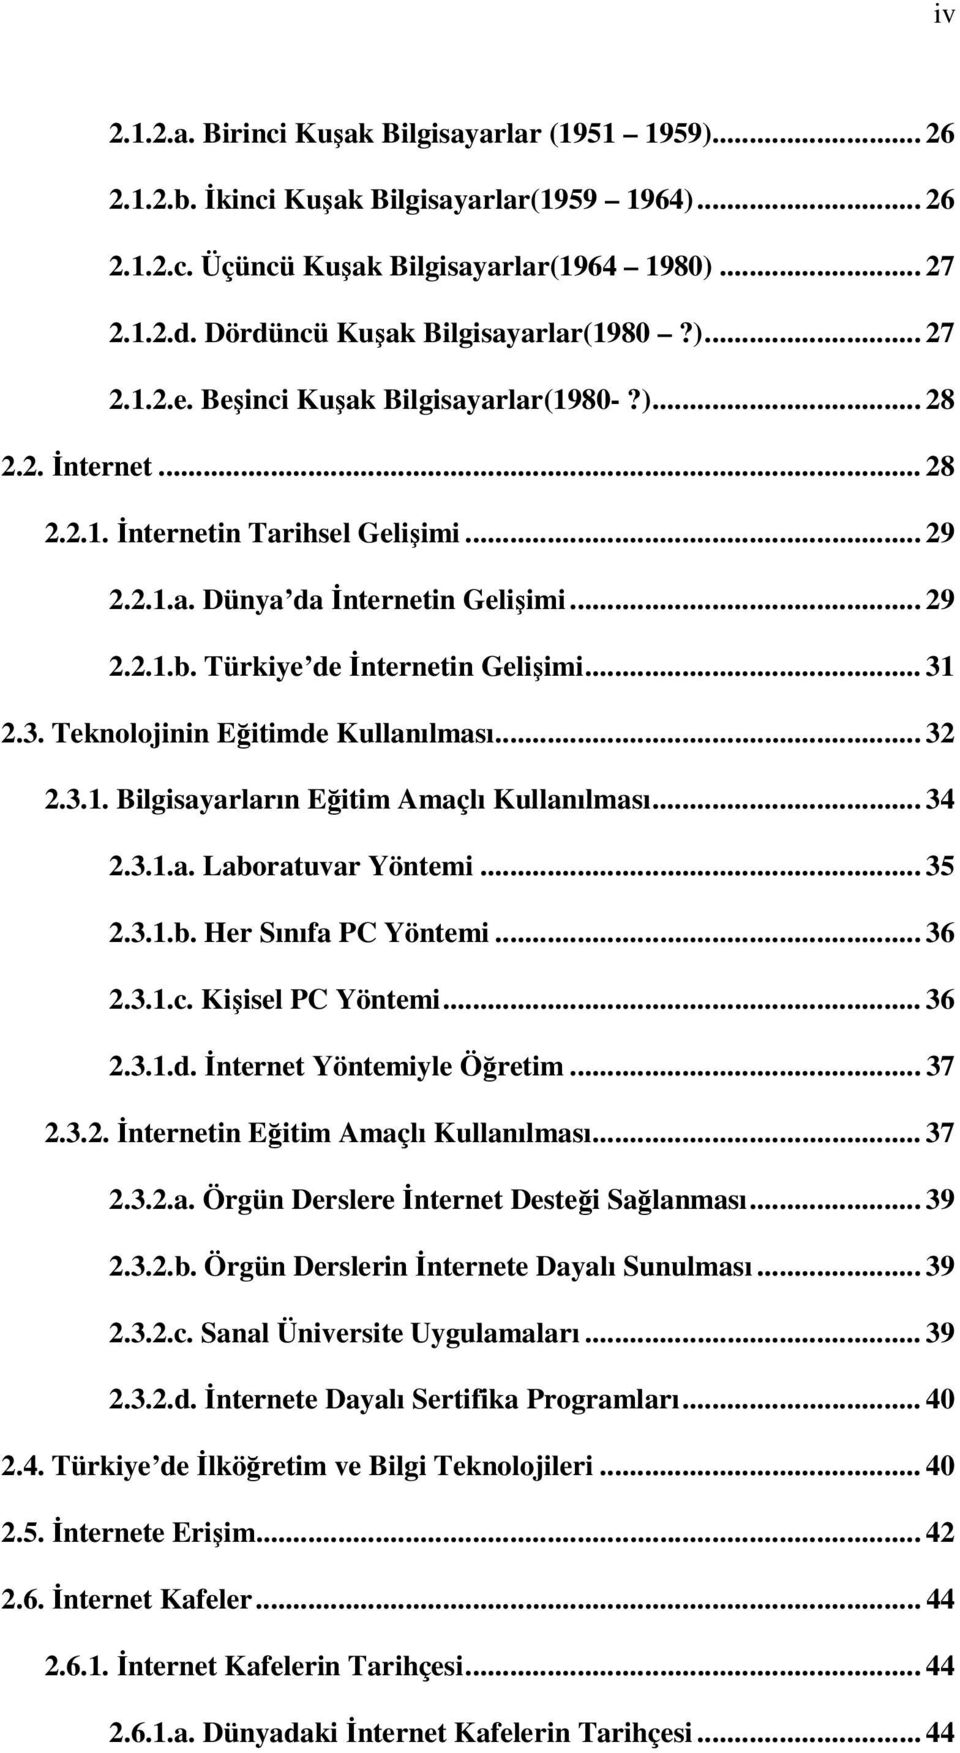 Türkiye de İnternetin Gelişimi... 31 2.3. Teknolojinin Eğitimde Kullanılması... 32 2.3.1. Bilgisayarların Eğitim Amaçlı Kullanılması... 34 2.3.1.a. Laboratuvar Yöntemi... 35 2.3.1.b. Her Sınıfa PC Yöntemi.